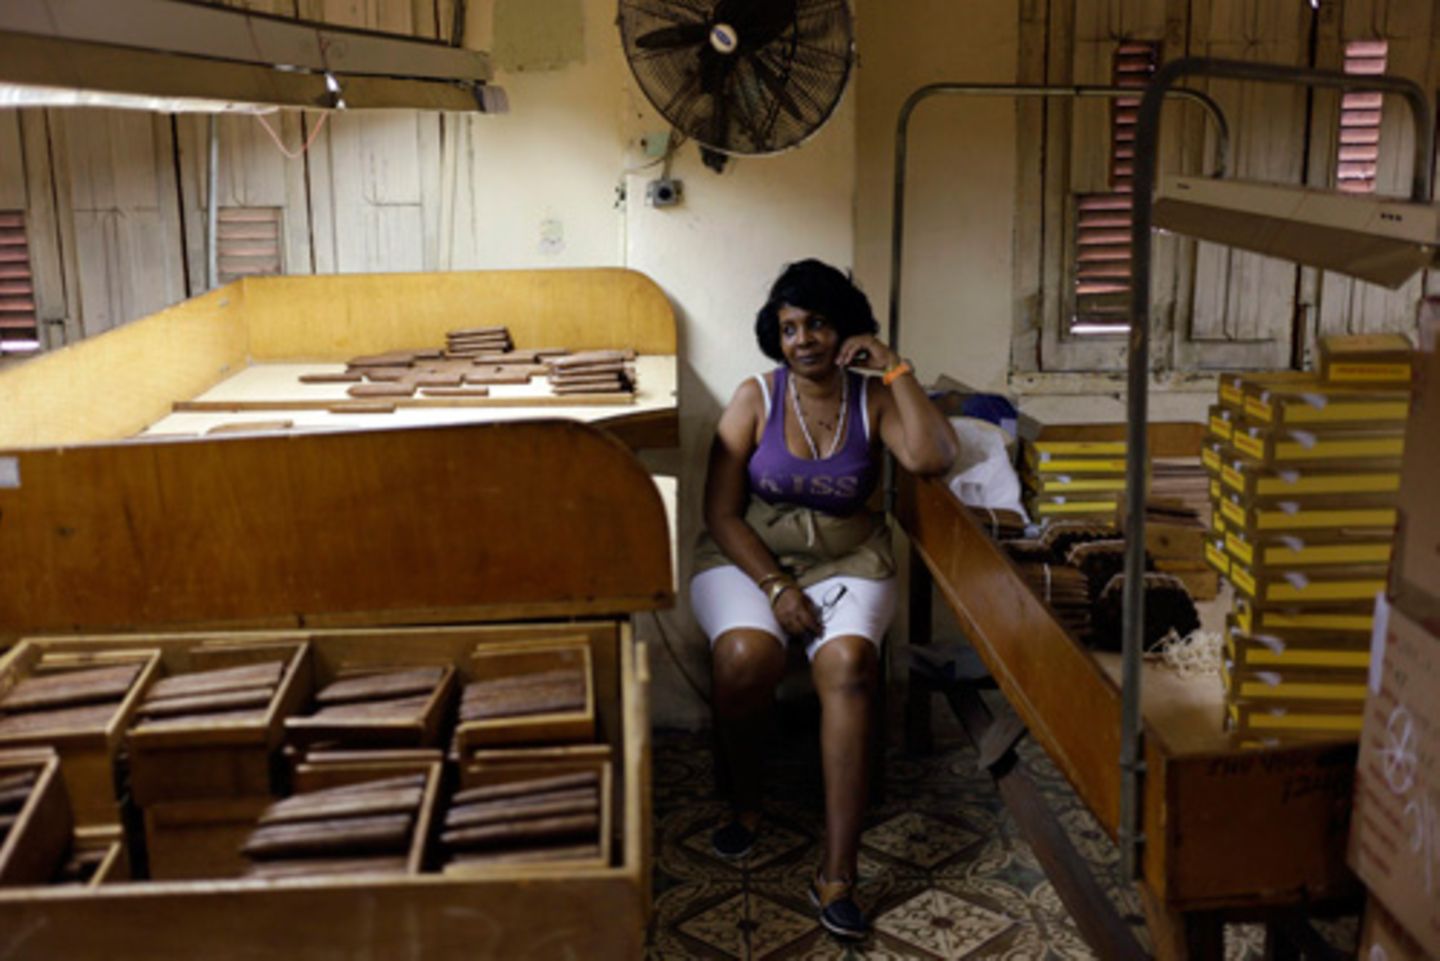 Havana, Cuba: Eine Arbeiterin in einer kubanischen Zigarren-Fabrik. Die berühmten Tabakwaren werden immer noch von Hand gefertigt.